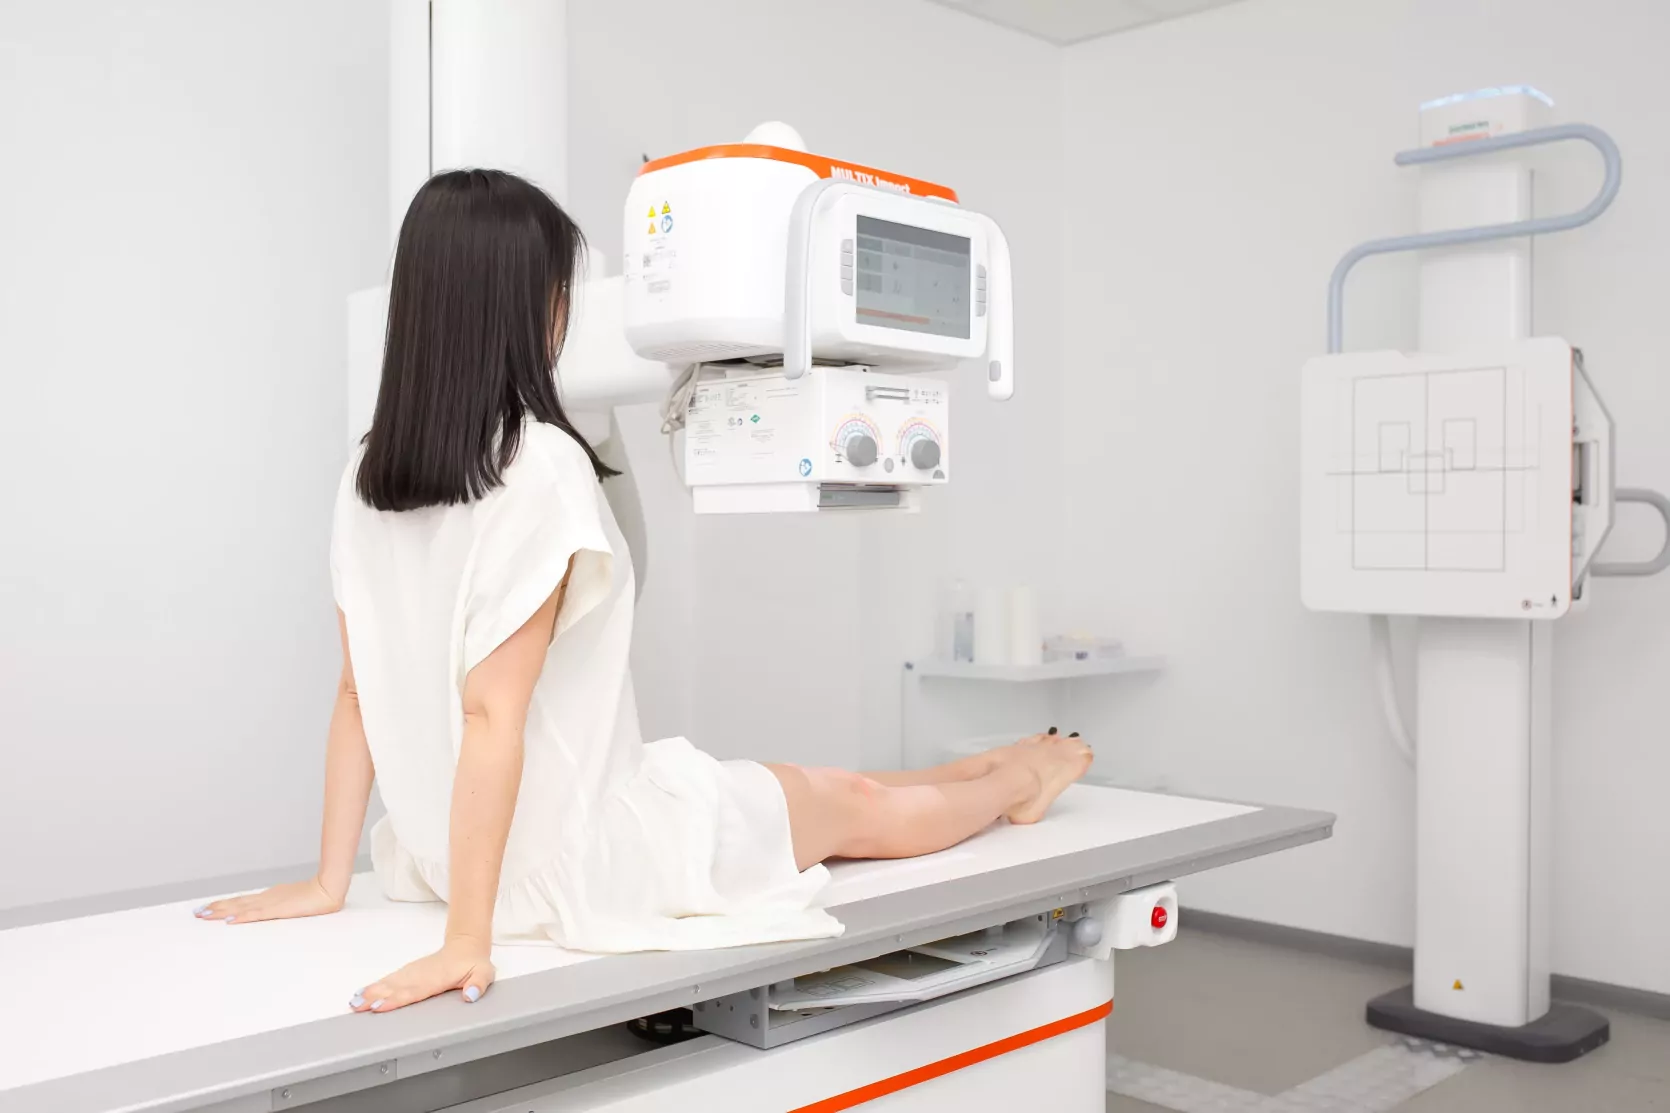 апарат для проведення рентгенологічних досліджень у медичному центрі ОН Клінік Харків Гагаріна